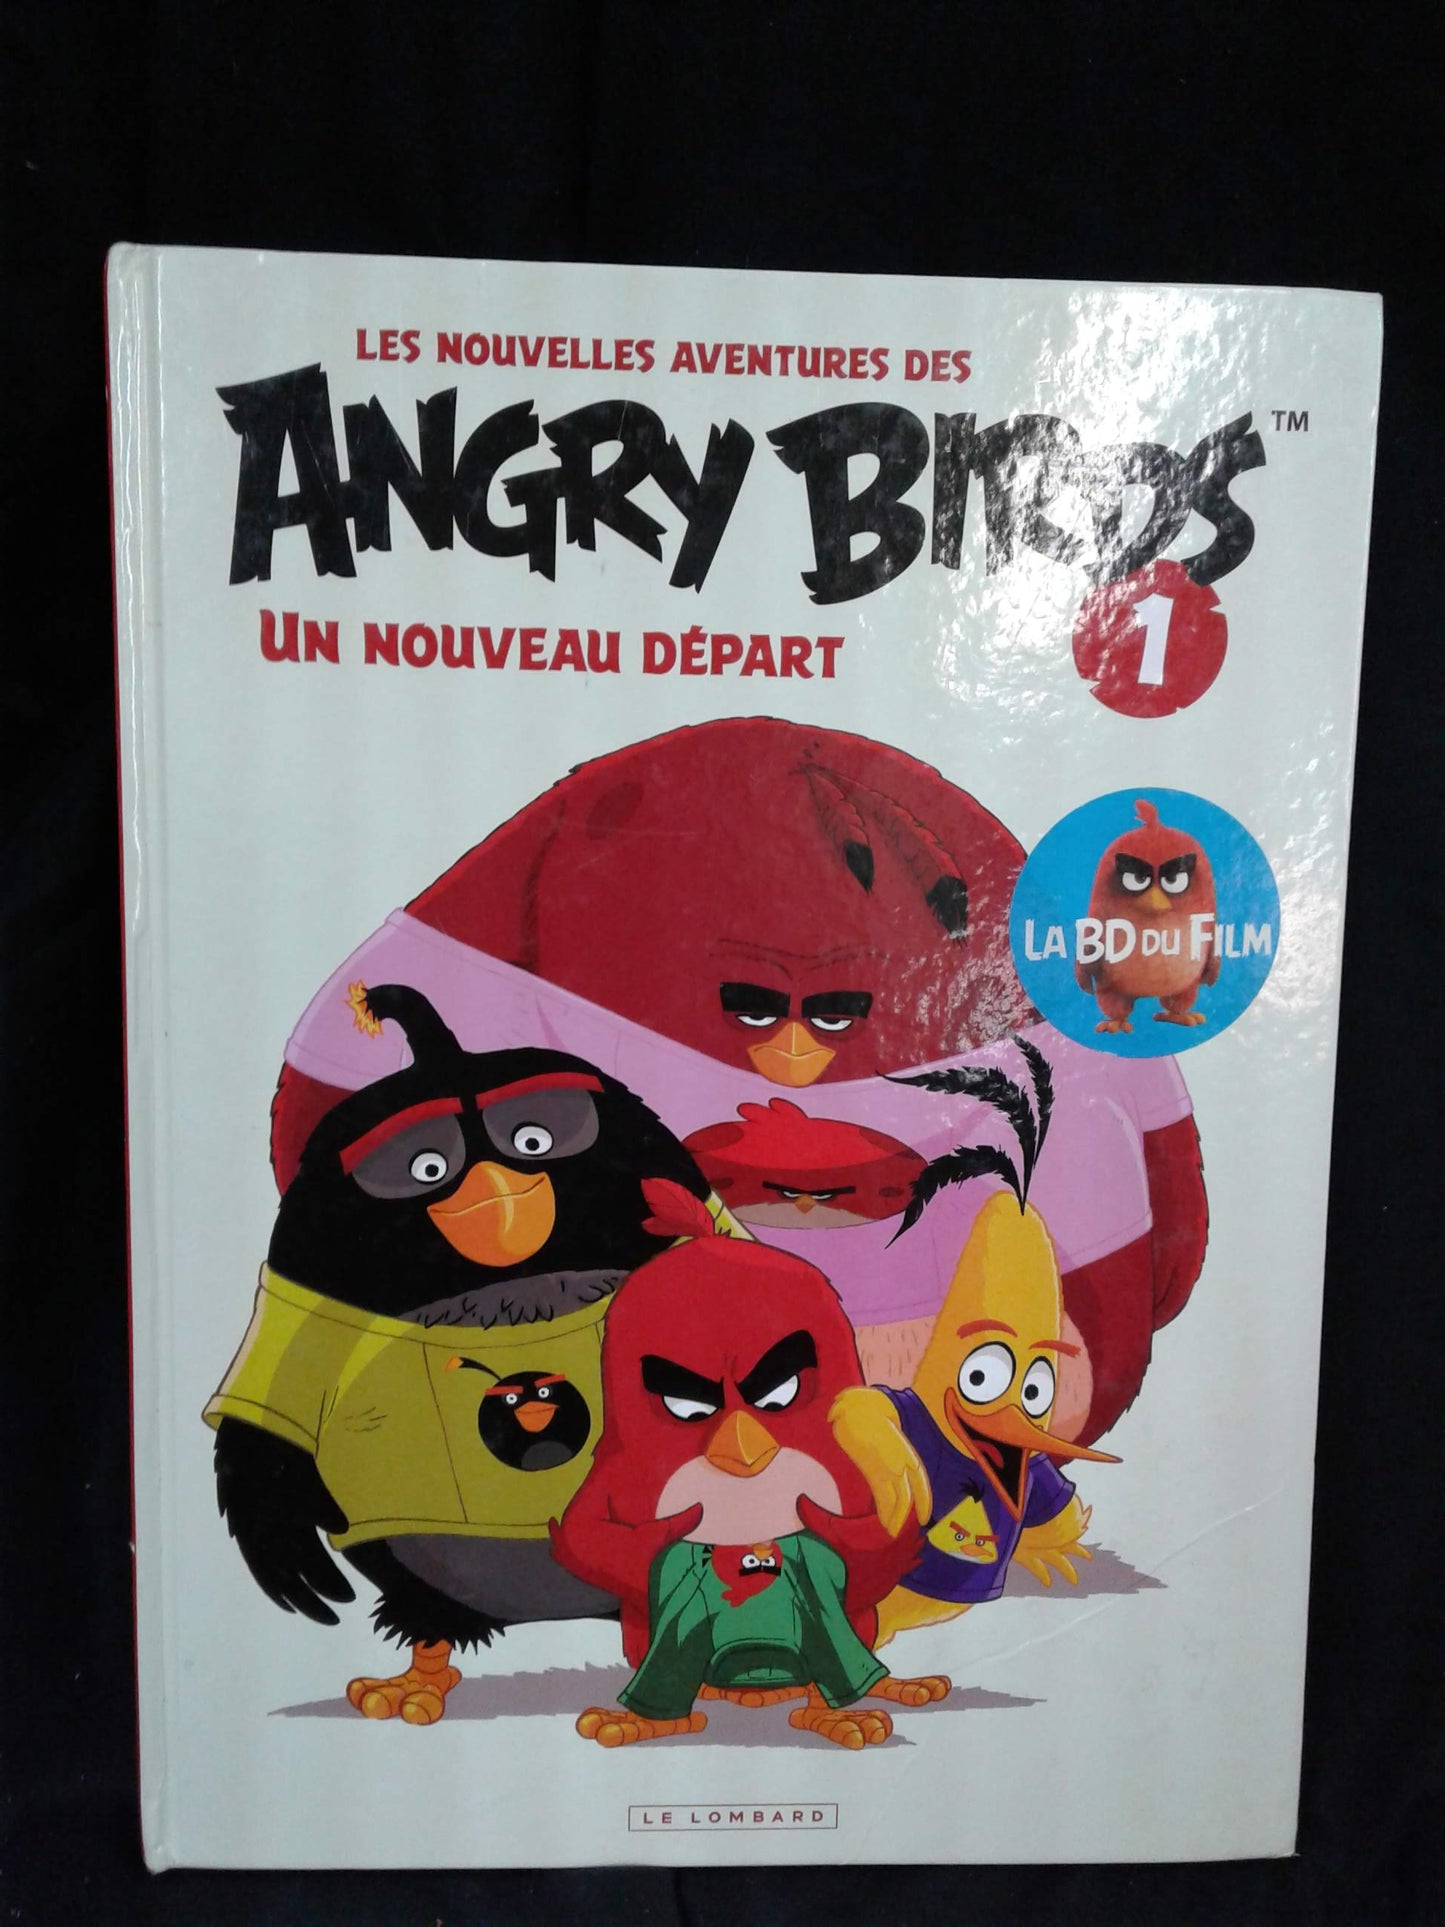 Les nouvelles aventures des Angry Birds un nouveau départ 1